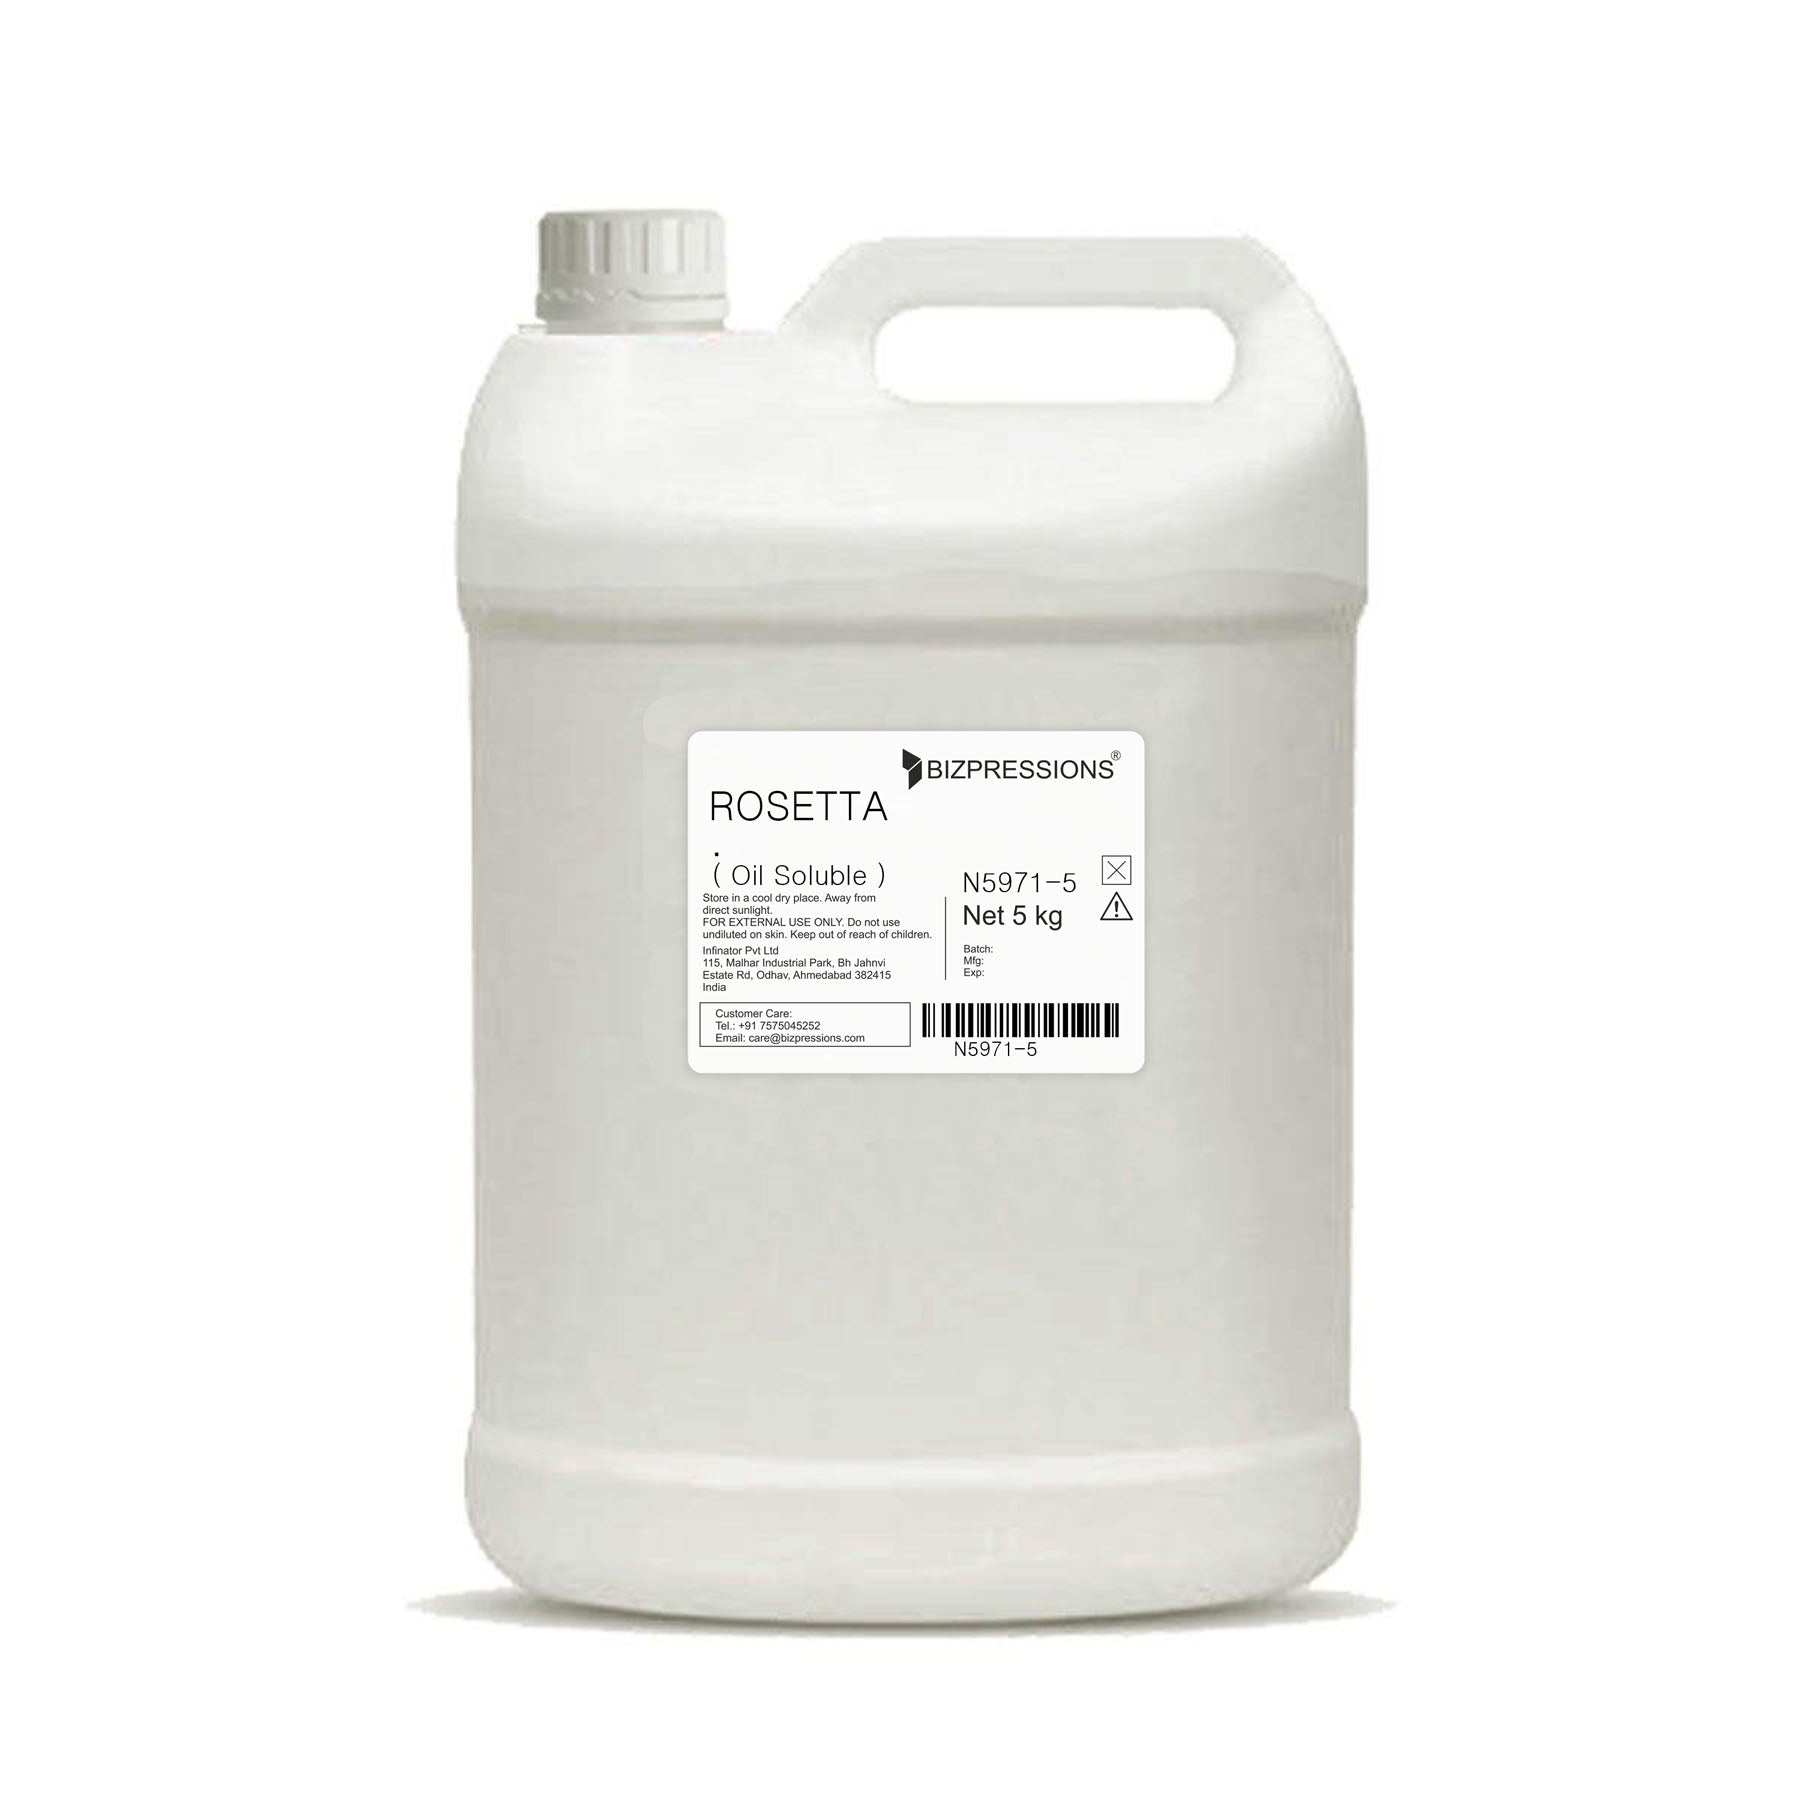 ROSETTA - Fragrance ( Oil Soluble ) - 5 kg